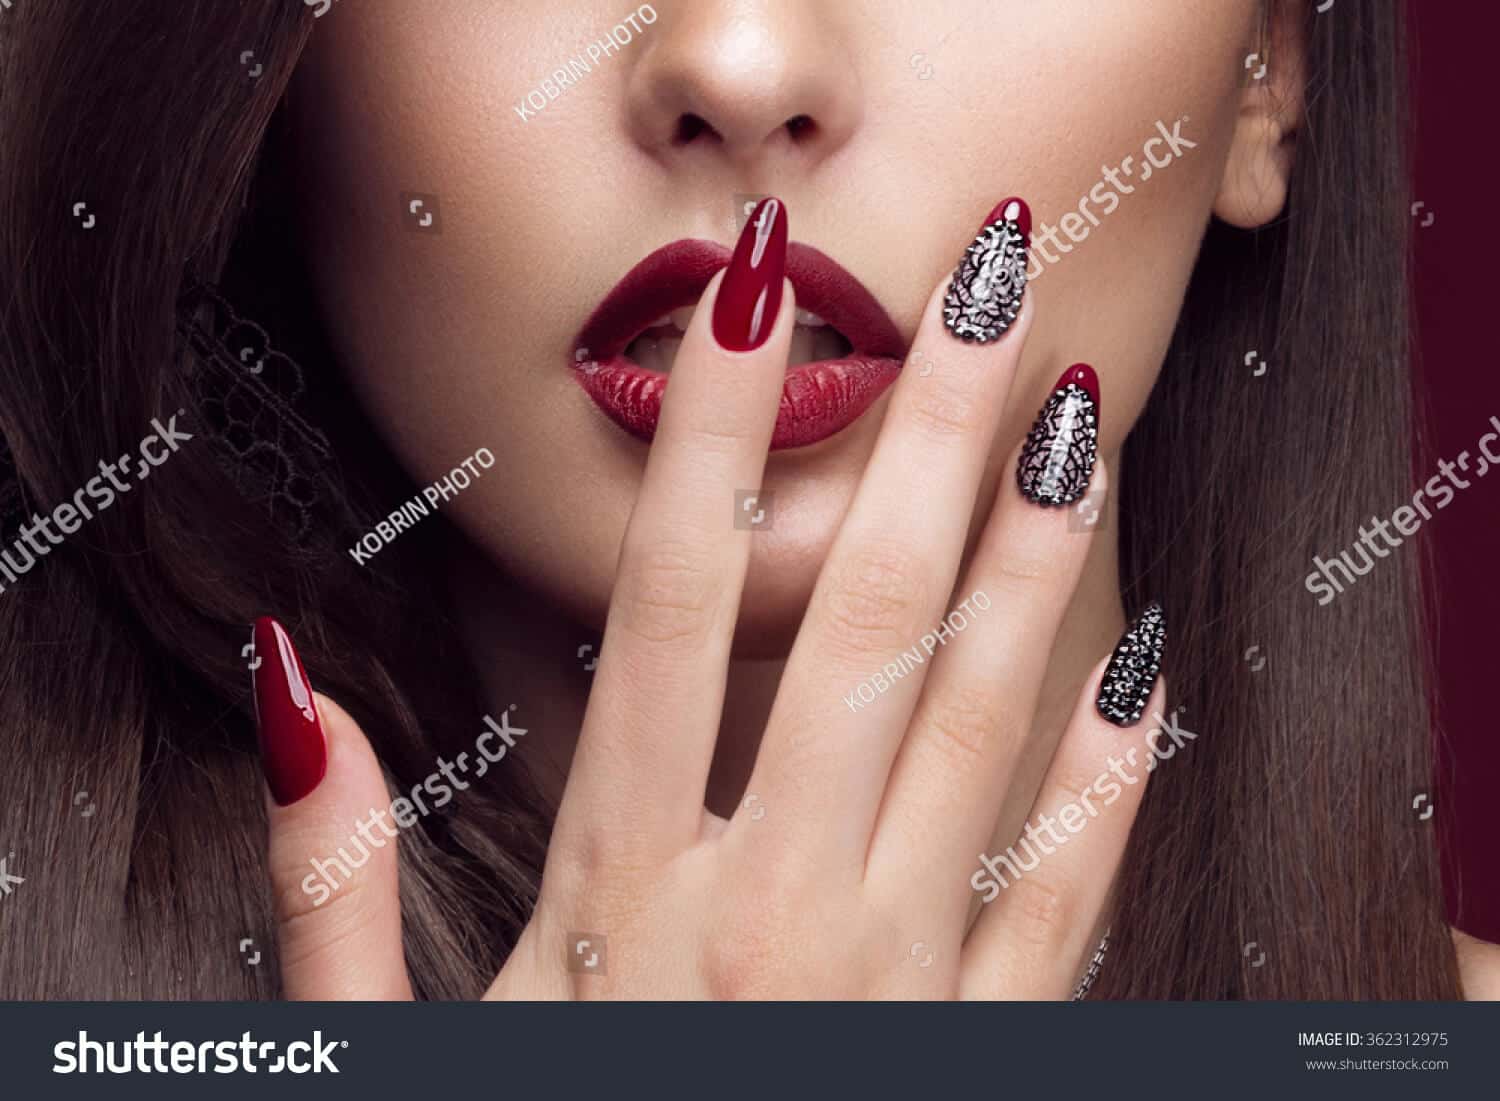  Nails Đẹp Hà Nội  Nhận làm nail tại nhà  Dịch  Vụ Chăm Sóc Móng Tại Nhà Hà Nội  Nhận làm nails theo   Facebook sign  up Security